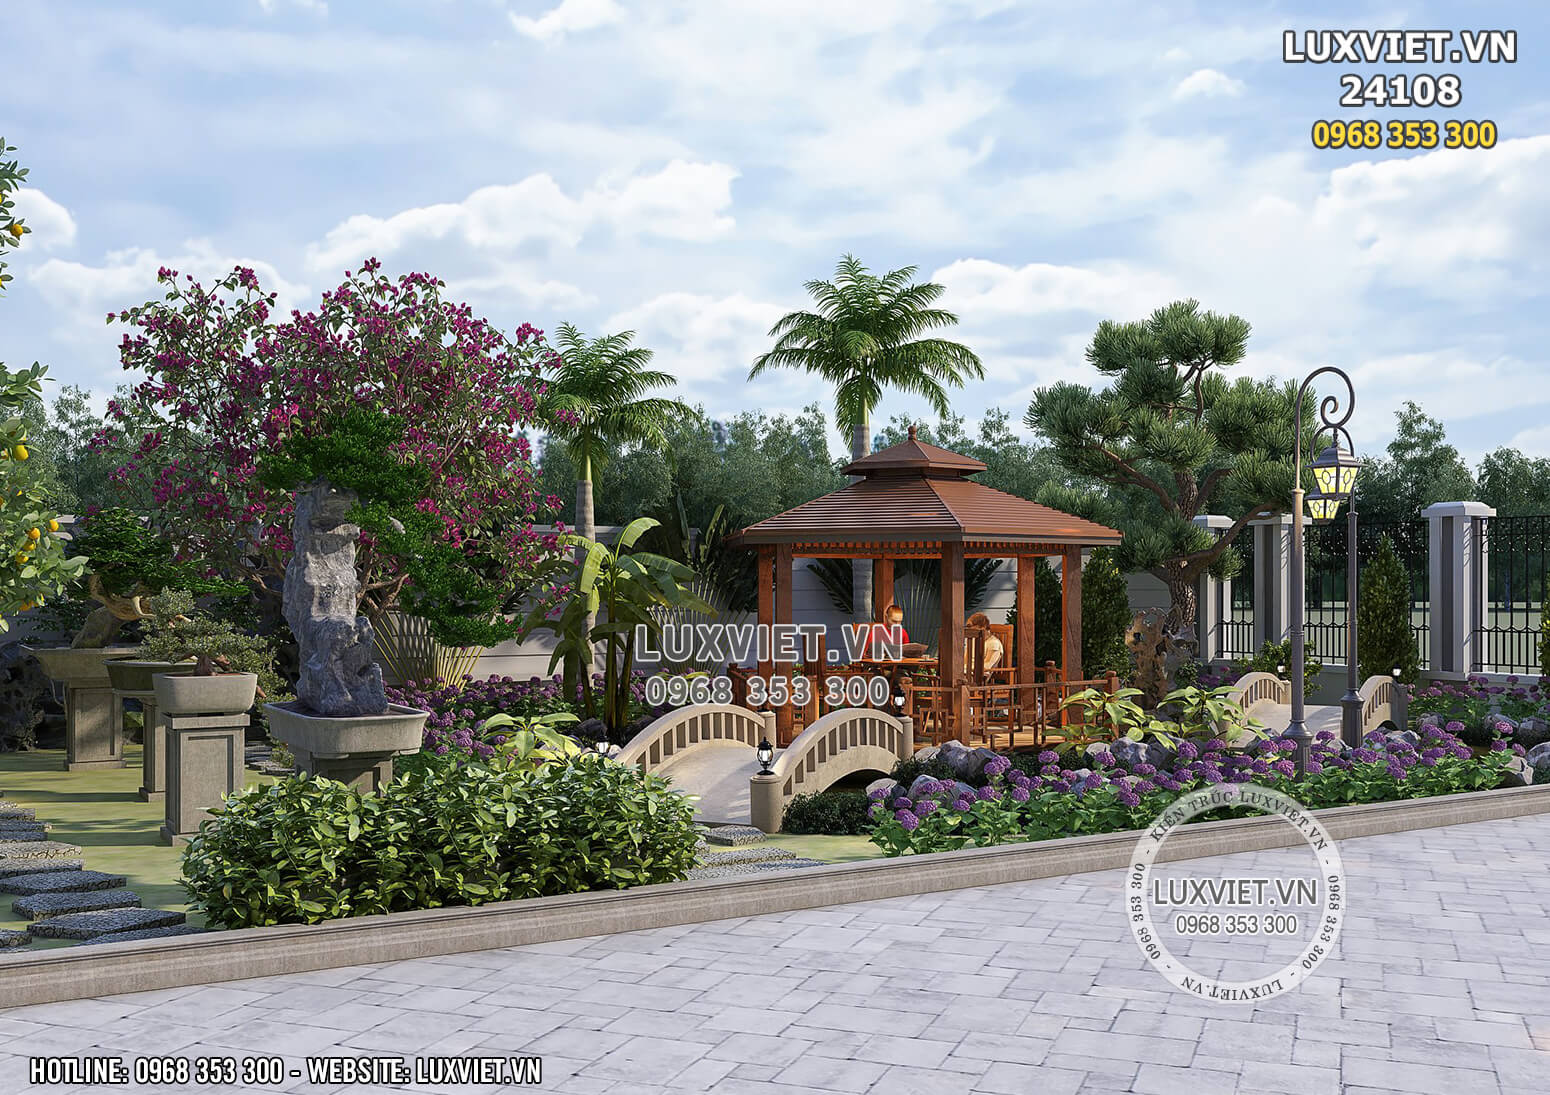 Hình ảnh: Thiết kế cảnh quan sân vườn nhà mái Thái 2 tầng - LV 24108